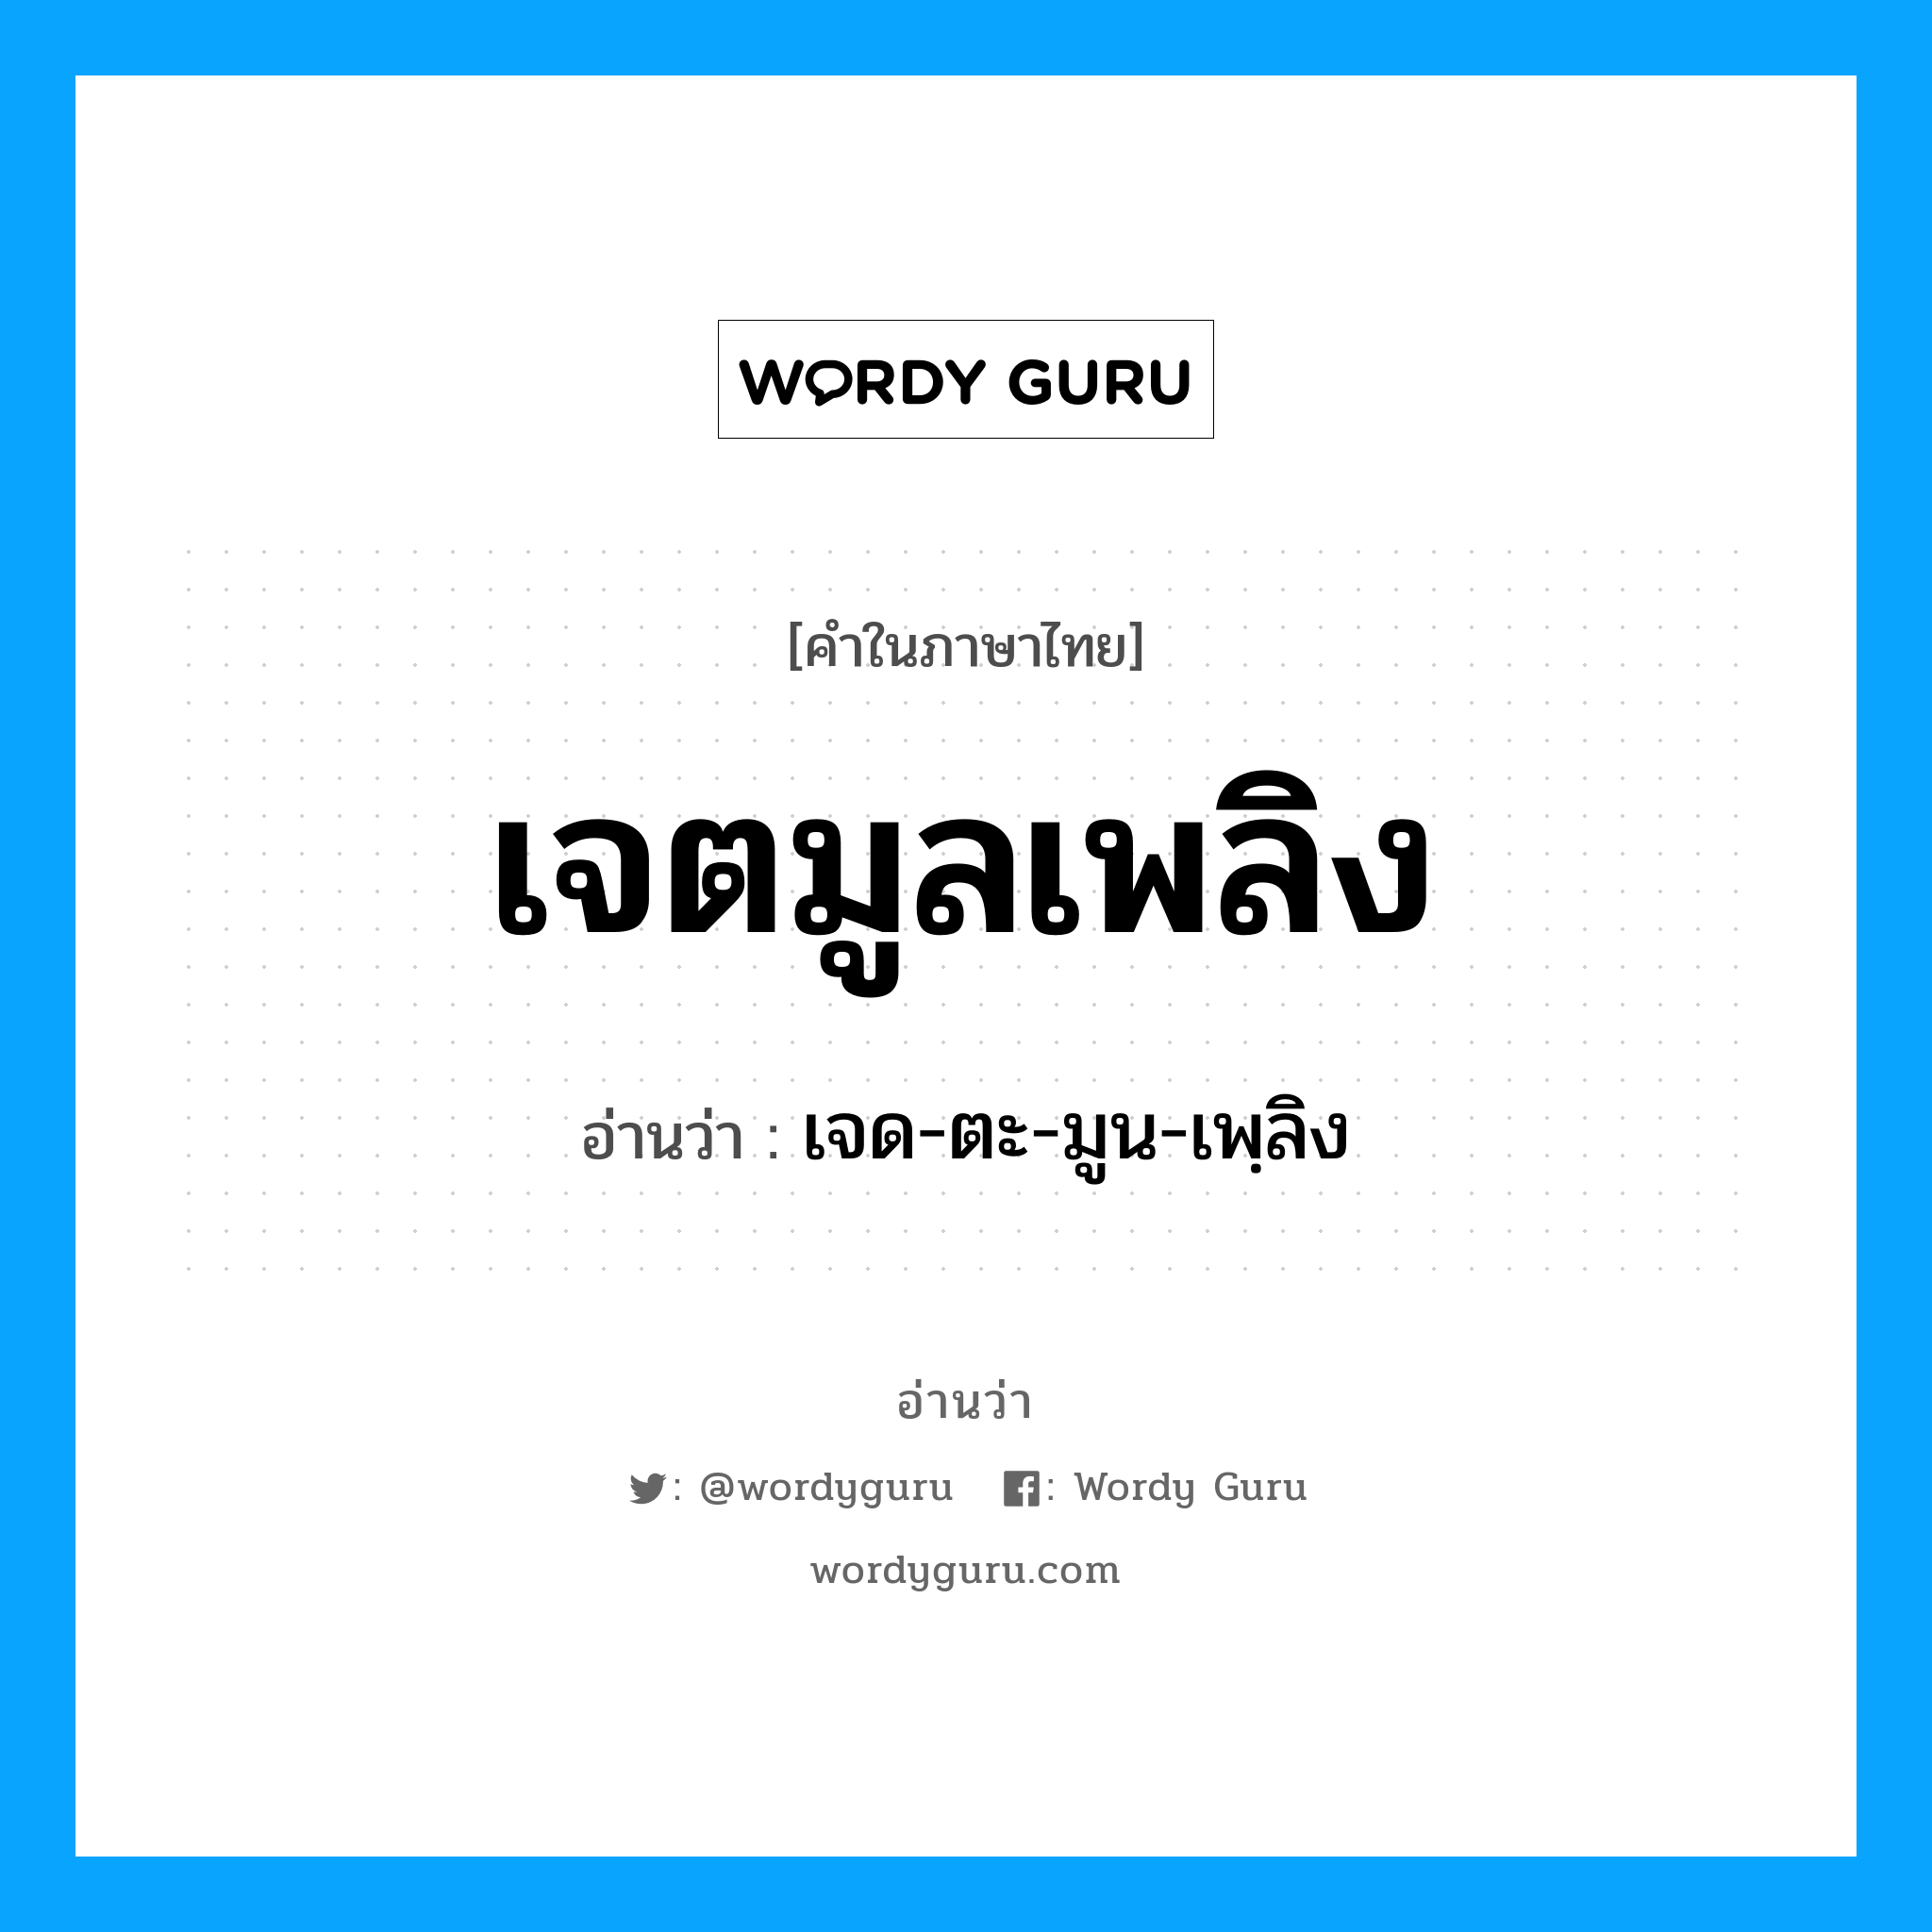 เจด-ตะ-มูน-เพฺลิง เป็นคำอ่านของคำไหน?, คำในภาษาไทย เจด-ตะ-มูน-เพฺลิง อ่านว่า เจตมูลเพลิง